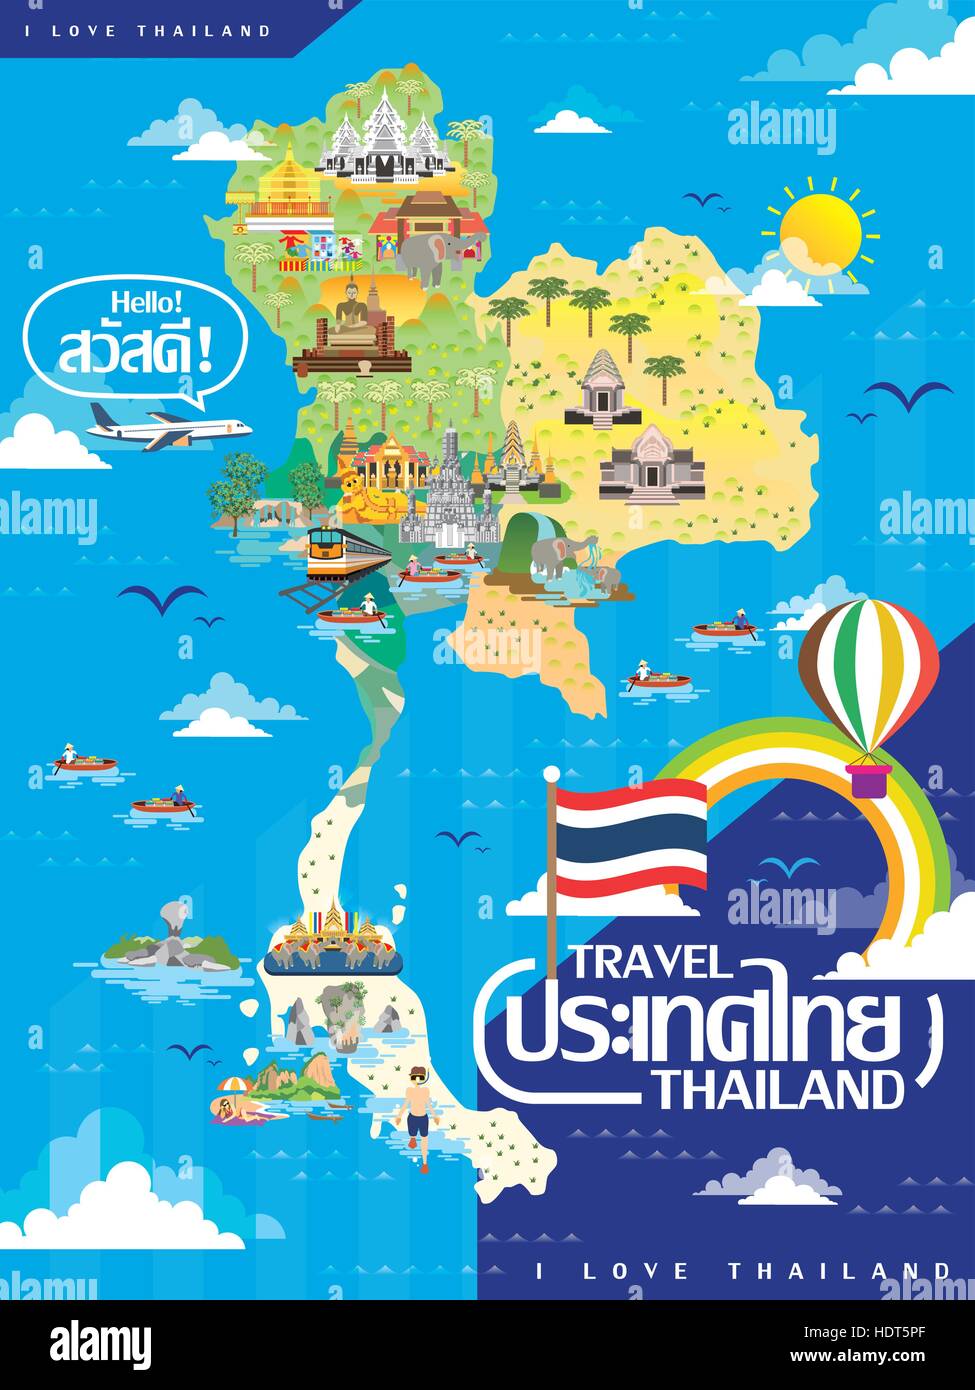 Mapa de viajes de Tailandia atractivo en estilo plano - Tailandia y hola palabras en tailandés. Ilustración del Vector